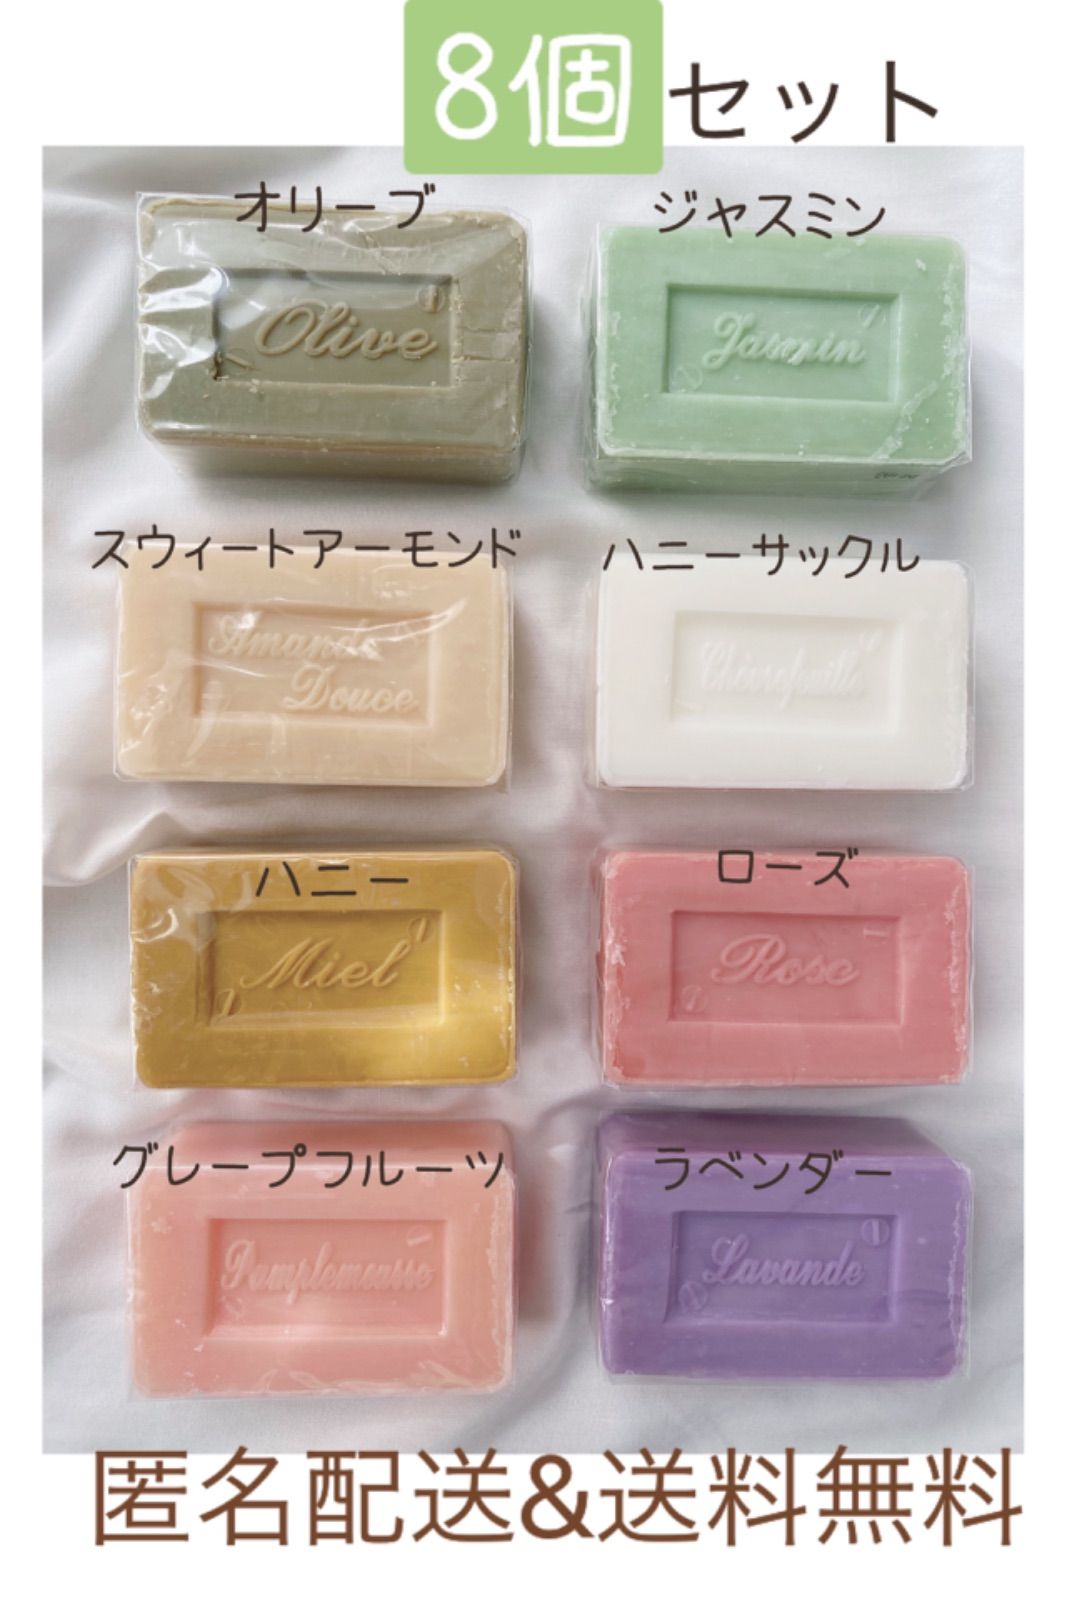 新品未使用品 サボン・ド・マルセイユ石鹸 8種類の香りセット